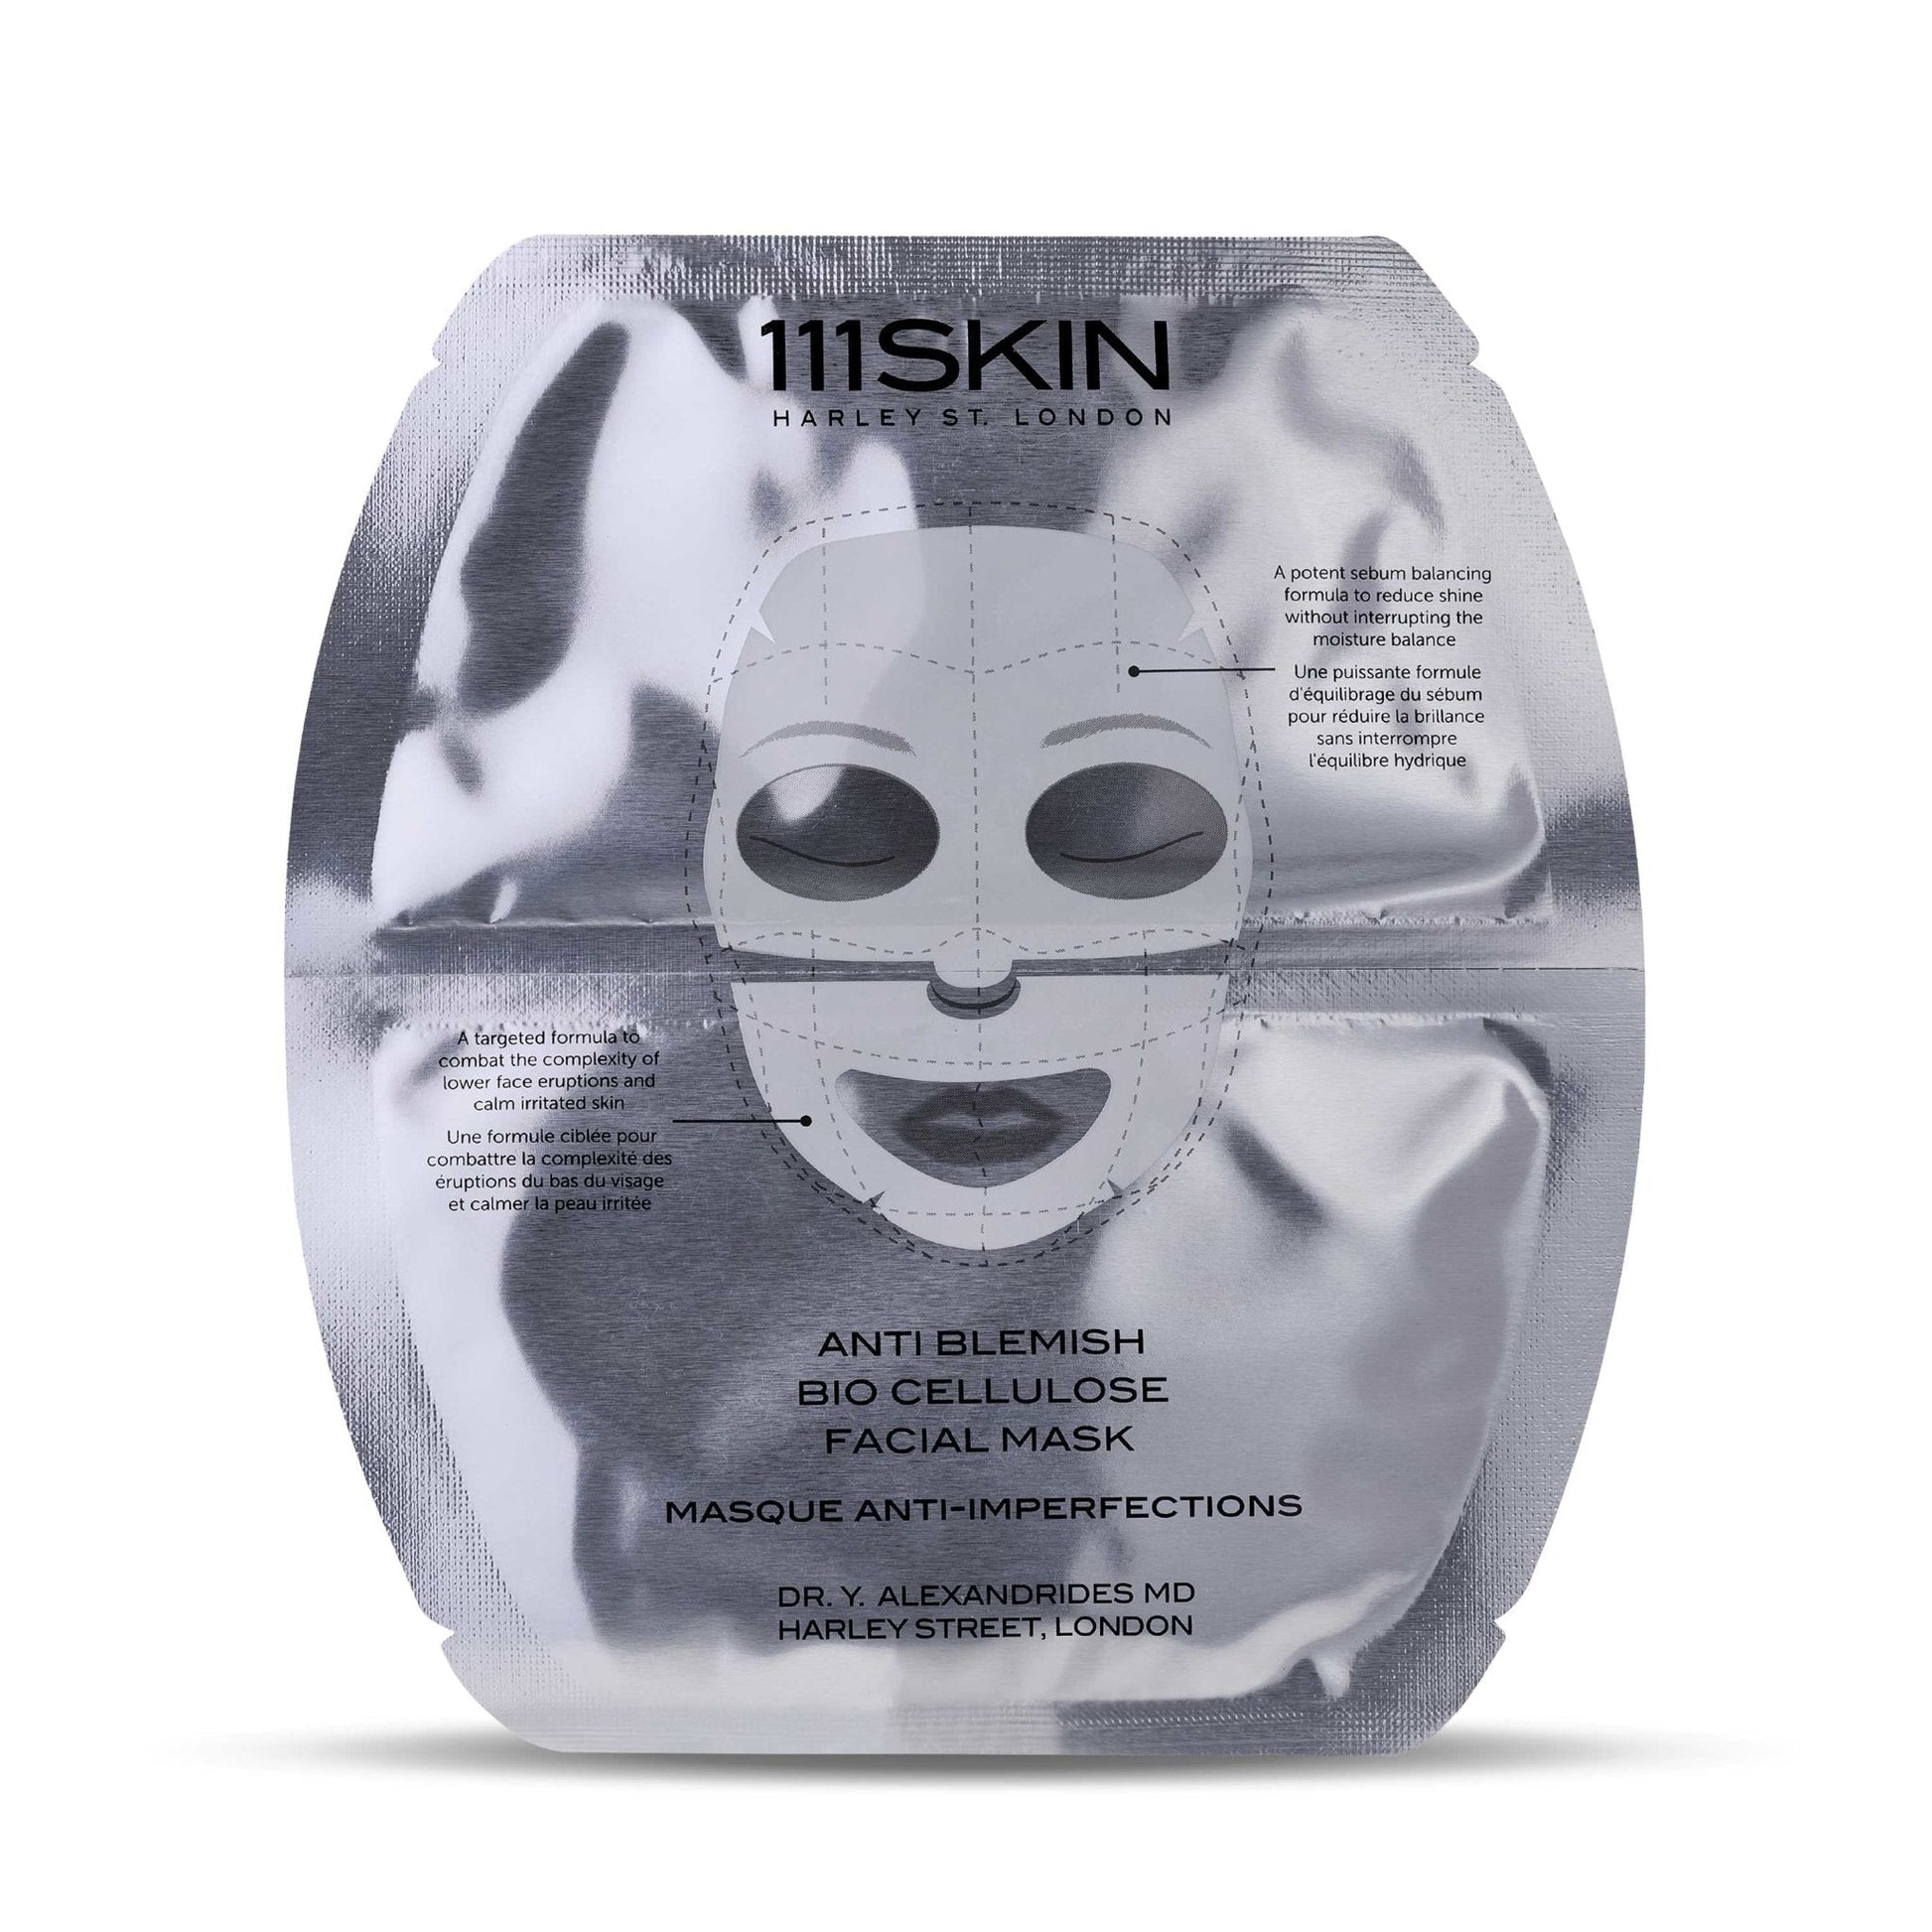 Anti Blemish Bio Cellulose Facial Mask - 111SKIN UK